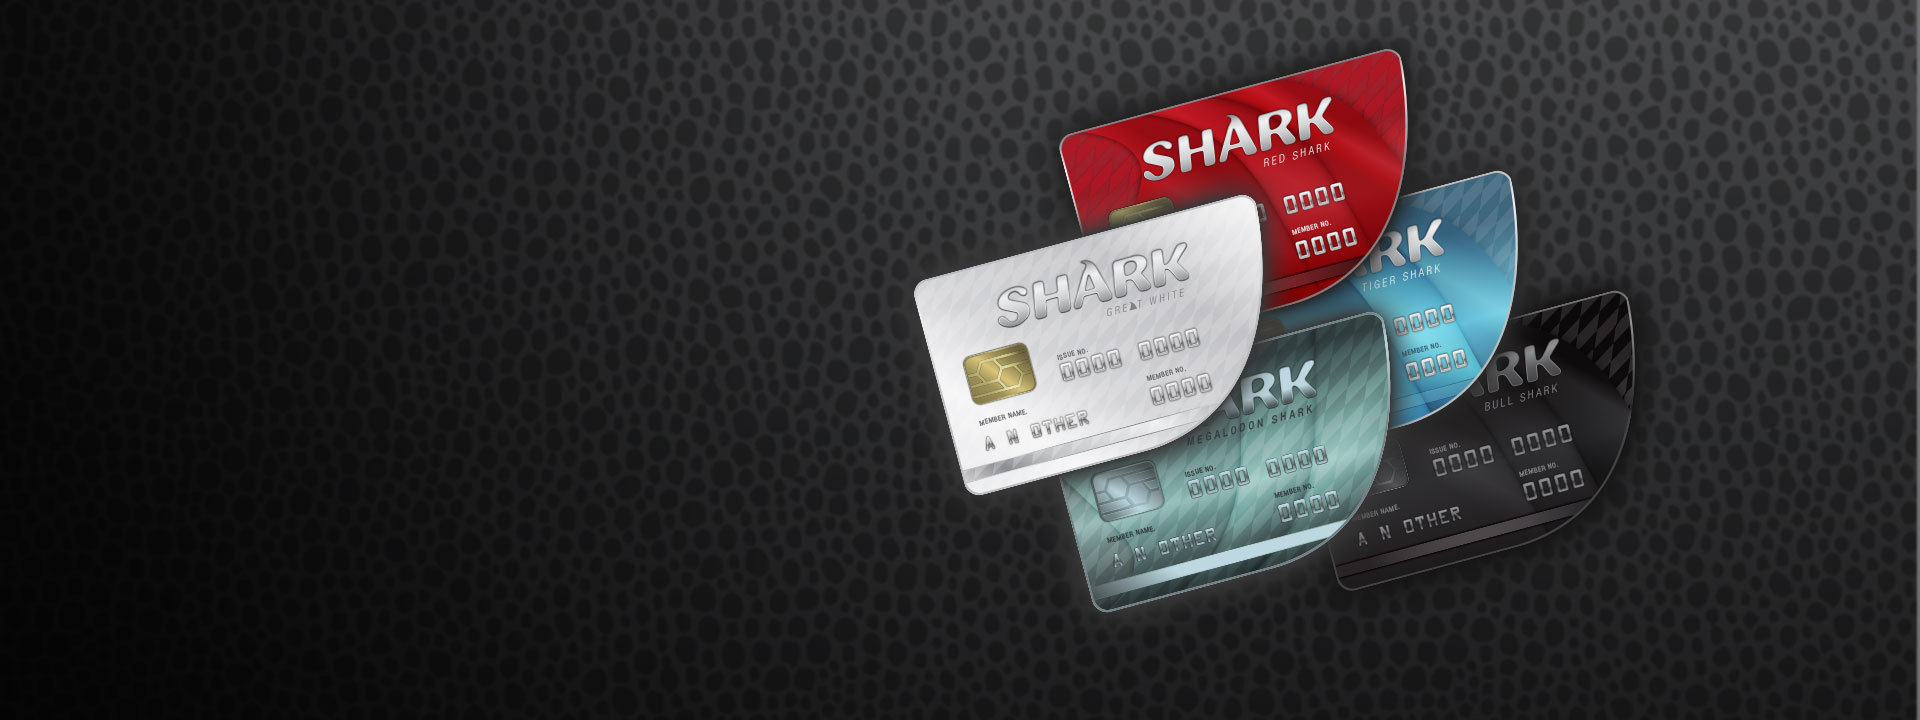 다섯 가지 색상의 Shark 신용 카드가 줄 지어 있는 모습. 